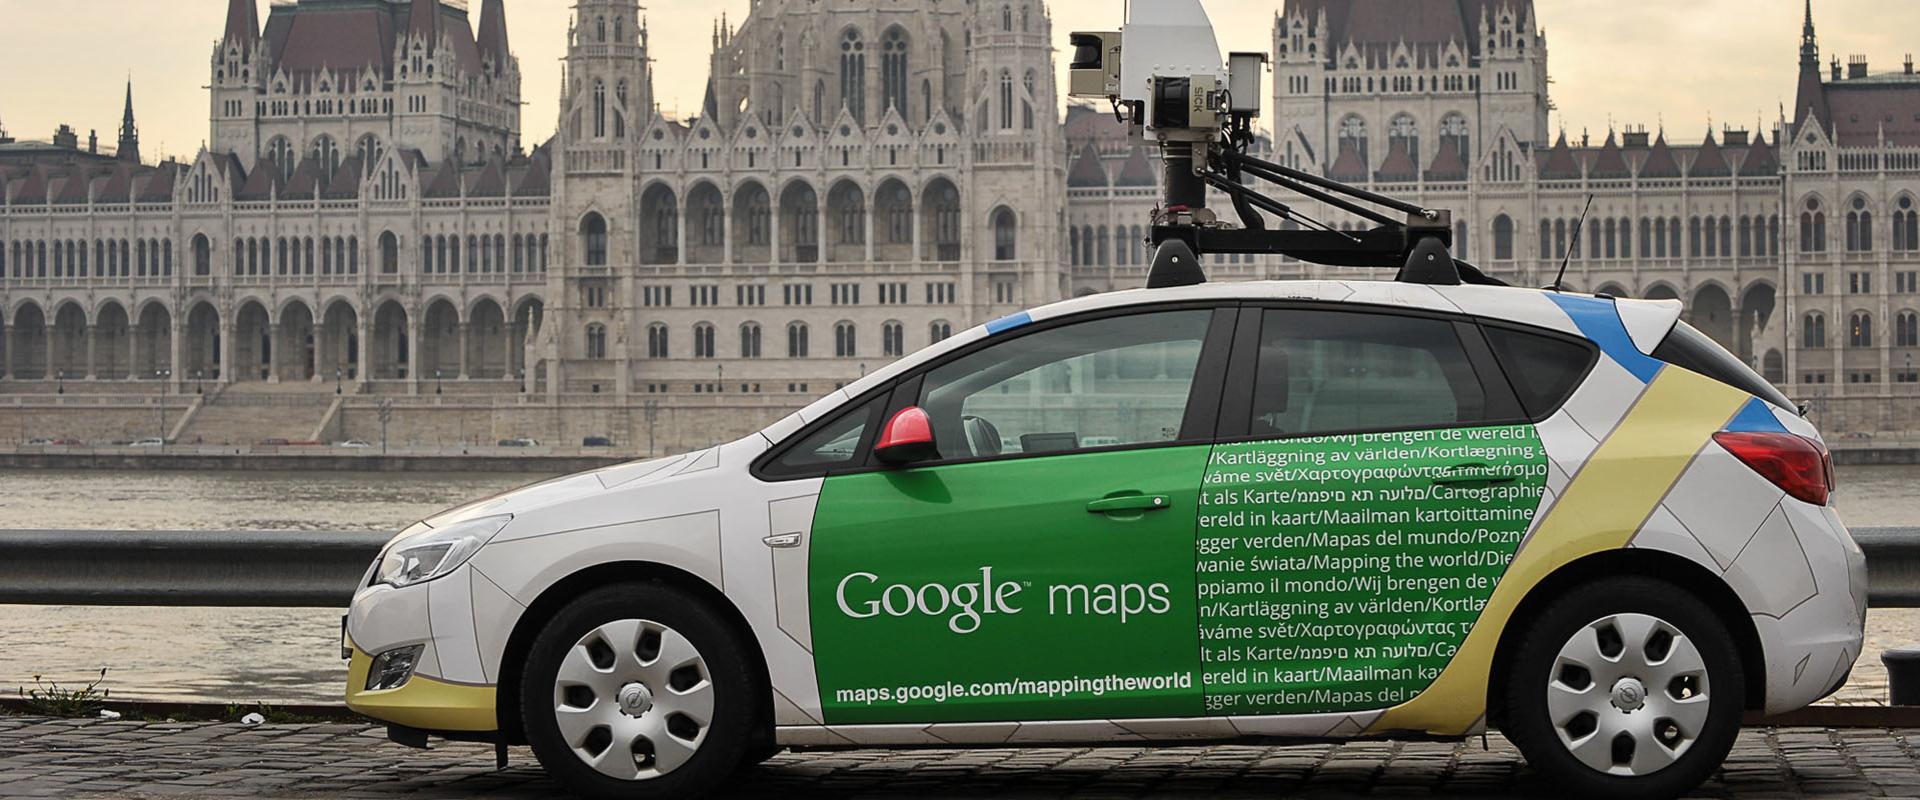 Vedd elő a legszexibb köntösöd és irány az utca - Ismét magyar városokat fedez fel a Google Utcakép autója